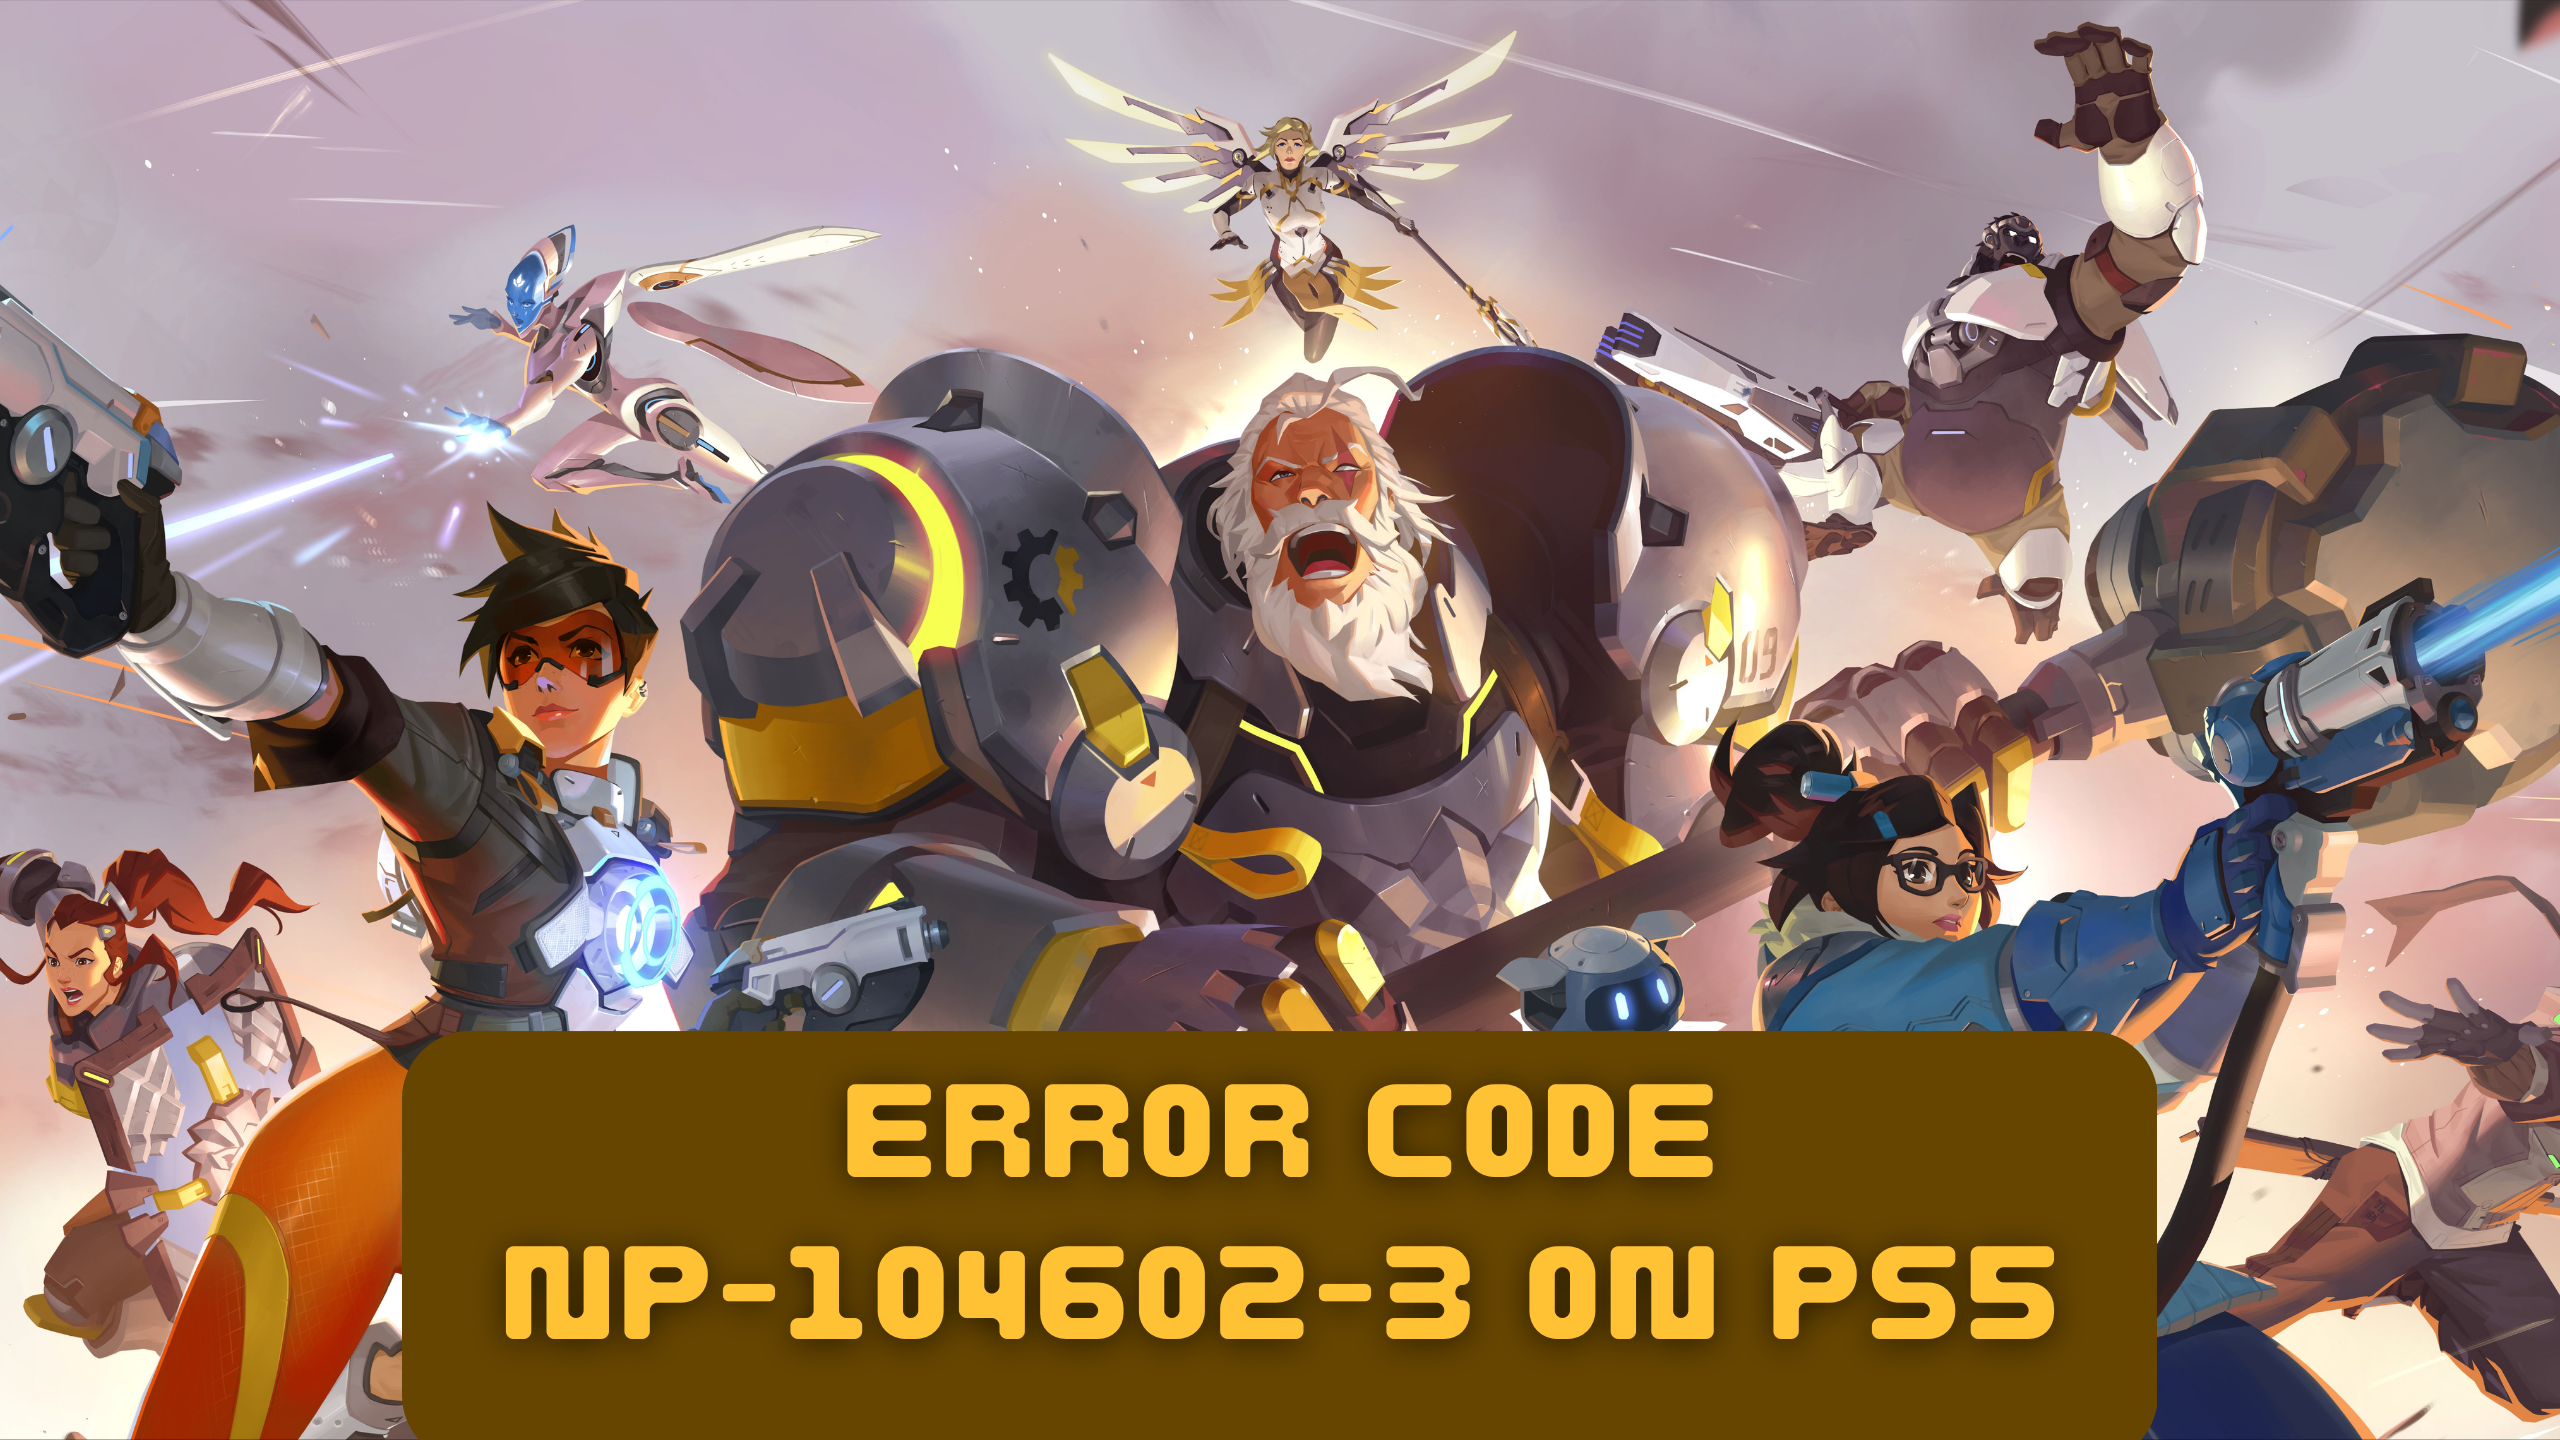 Overwatch 2 Error Code NP-104602-3 on PS5